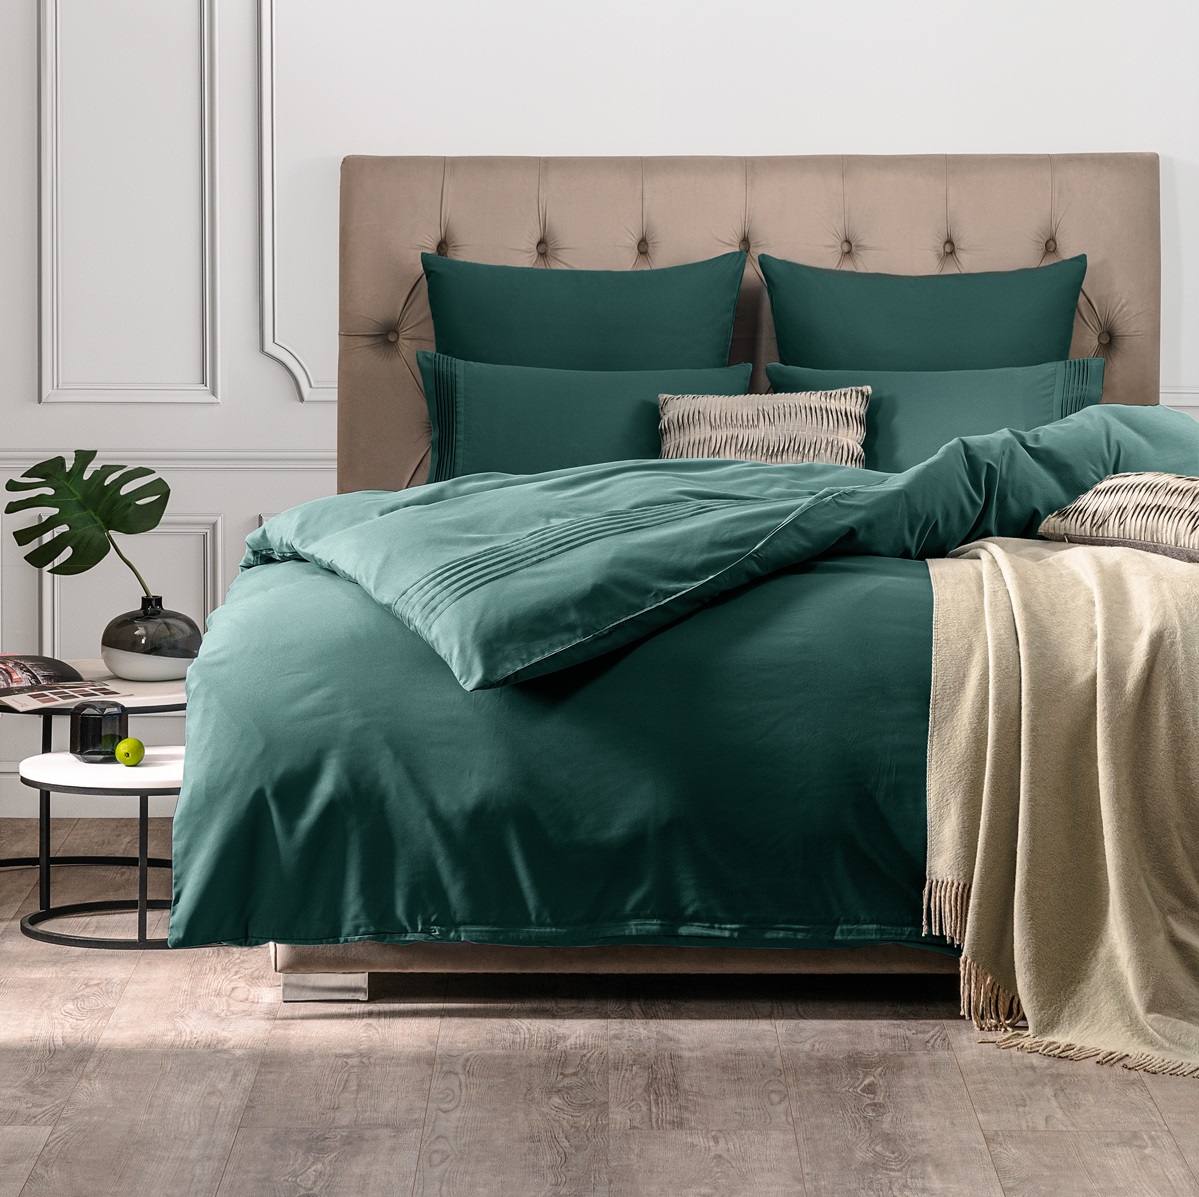 Комплект постельного белья Sleepix Миоко зеленый Полуторный, размер Полуторный - фото 1